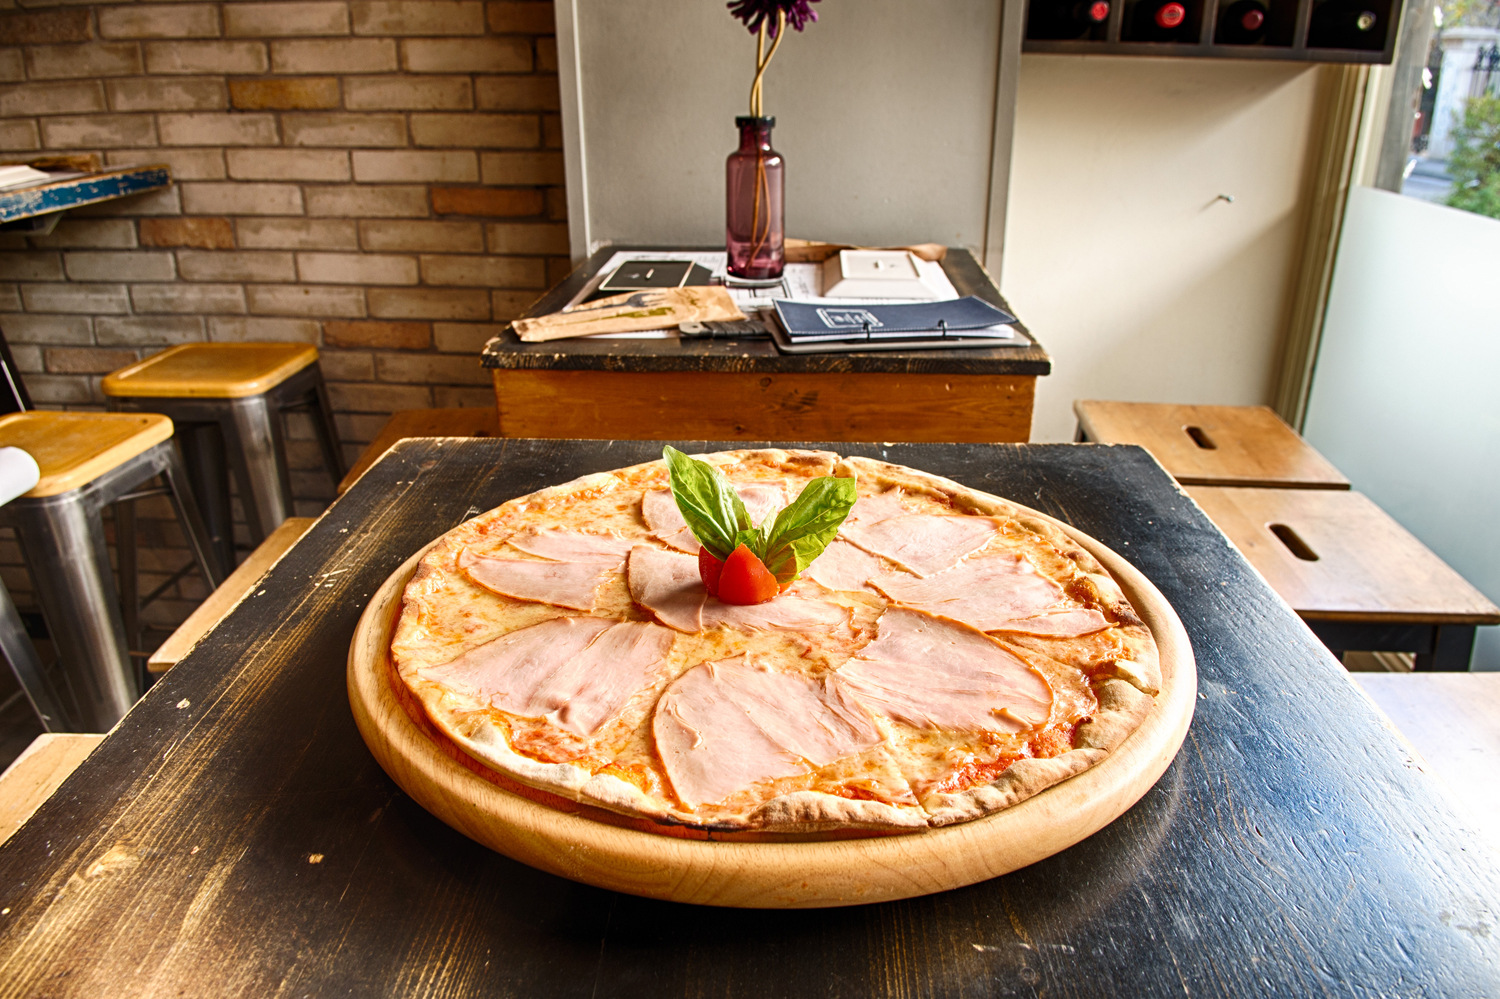 Οι βέρες ιταλιάνες πίτσες με την τραγανή και λεπτή ζύμη είναι το μεγάλο ατού του School Pizza Bar